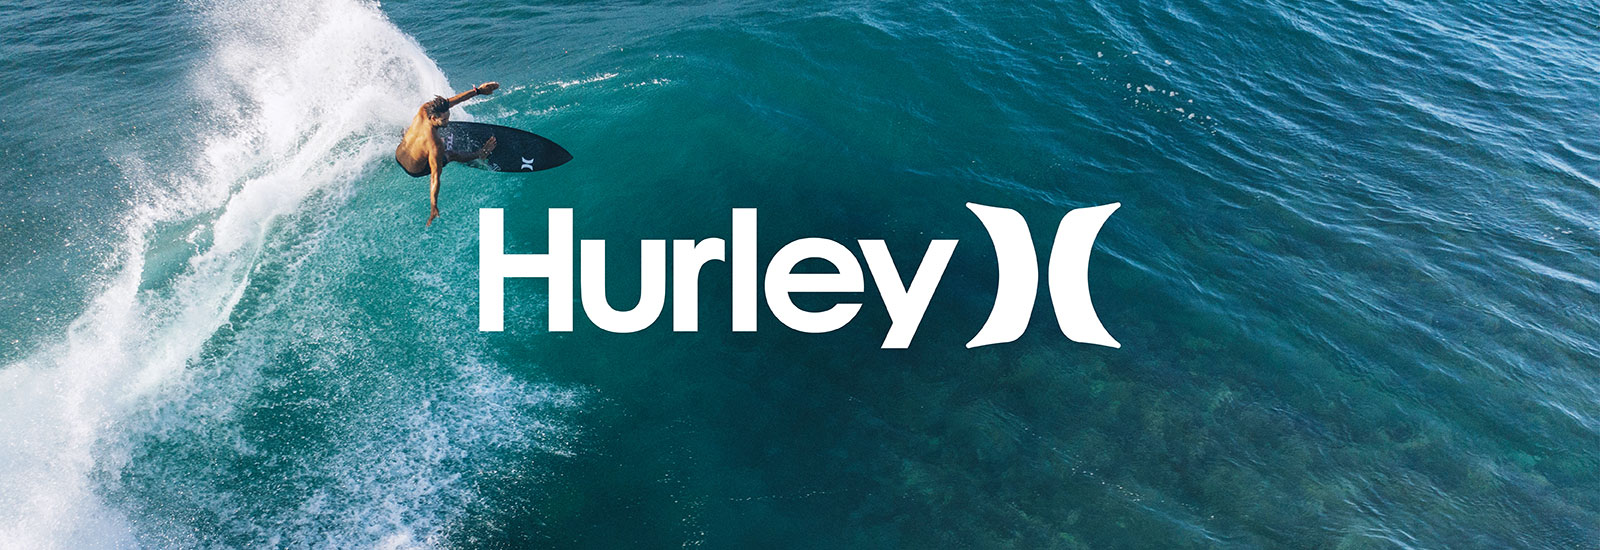 Hurley Clothing: Shirts, Hats, & More